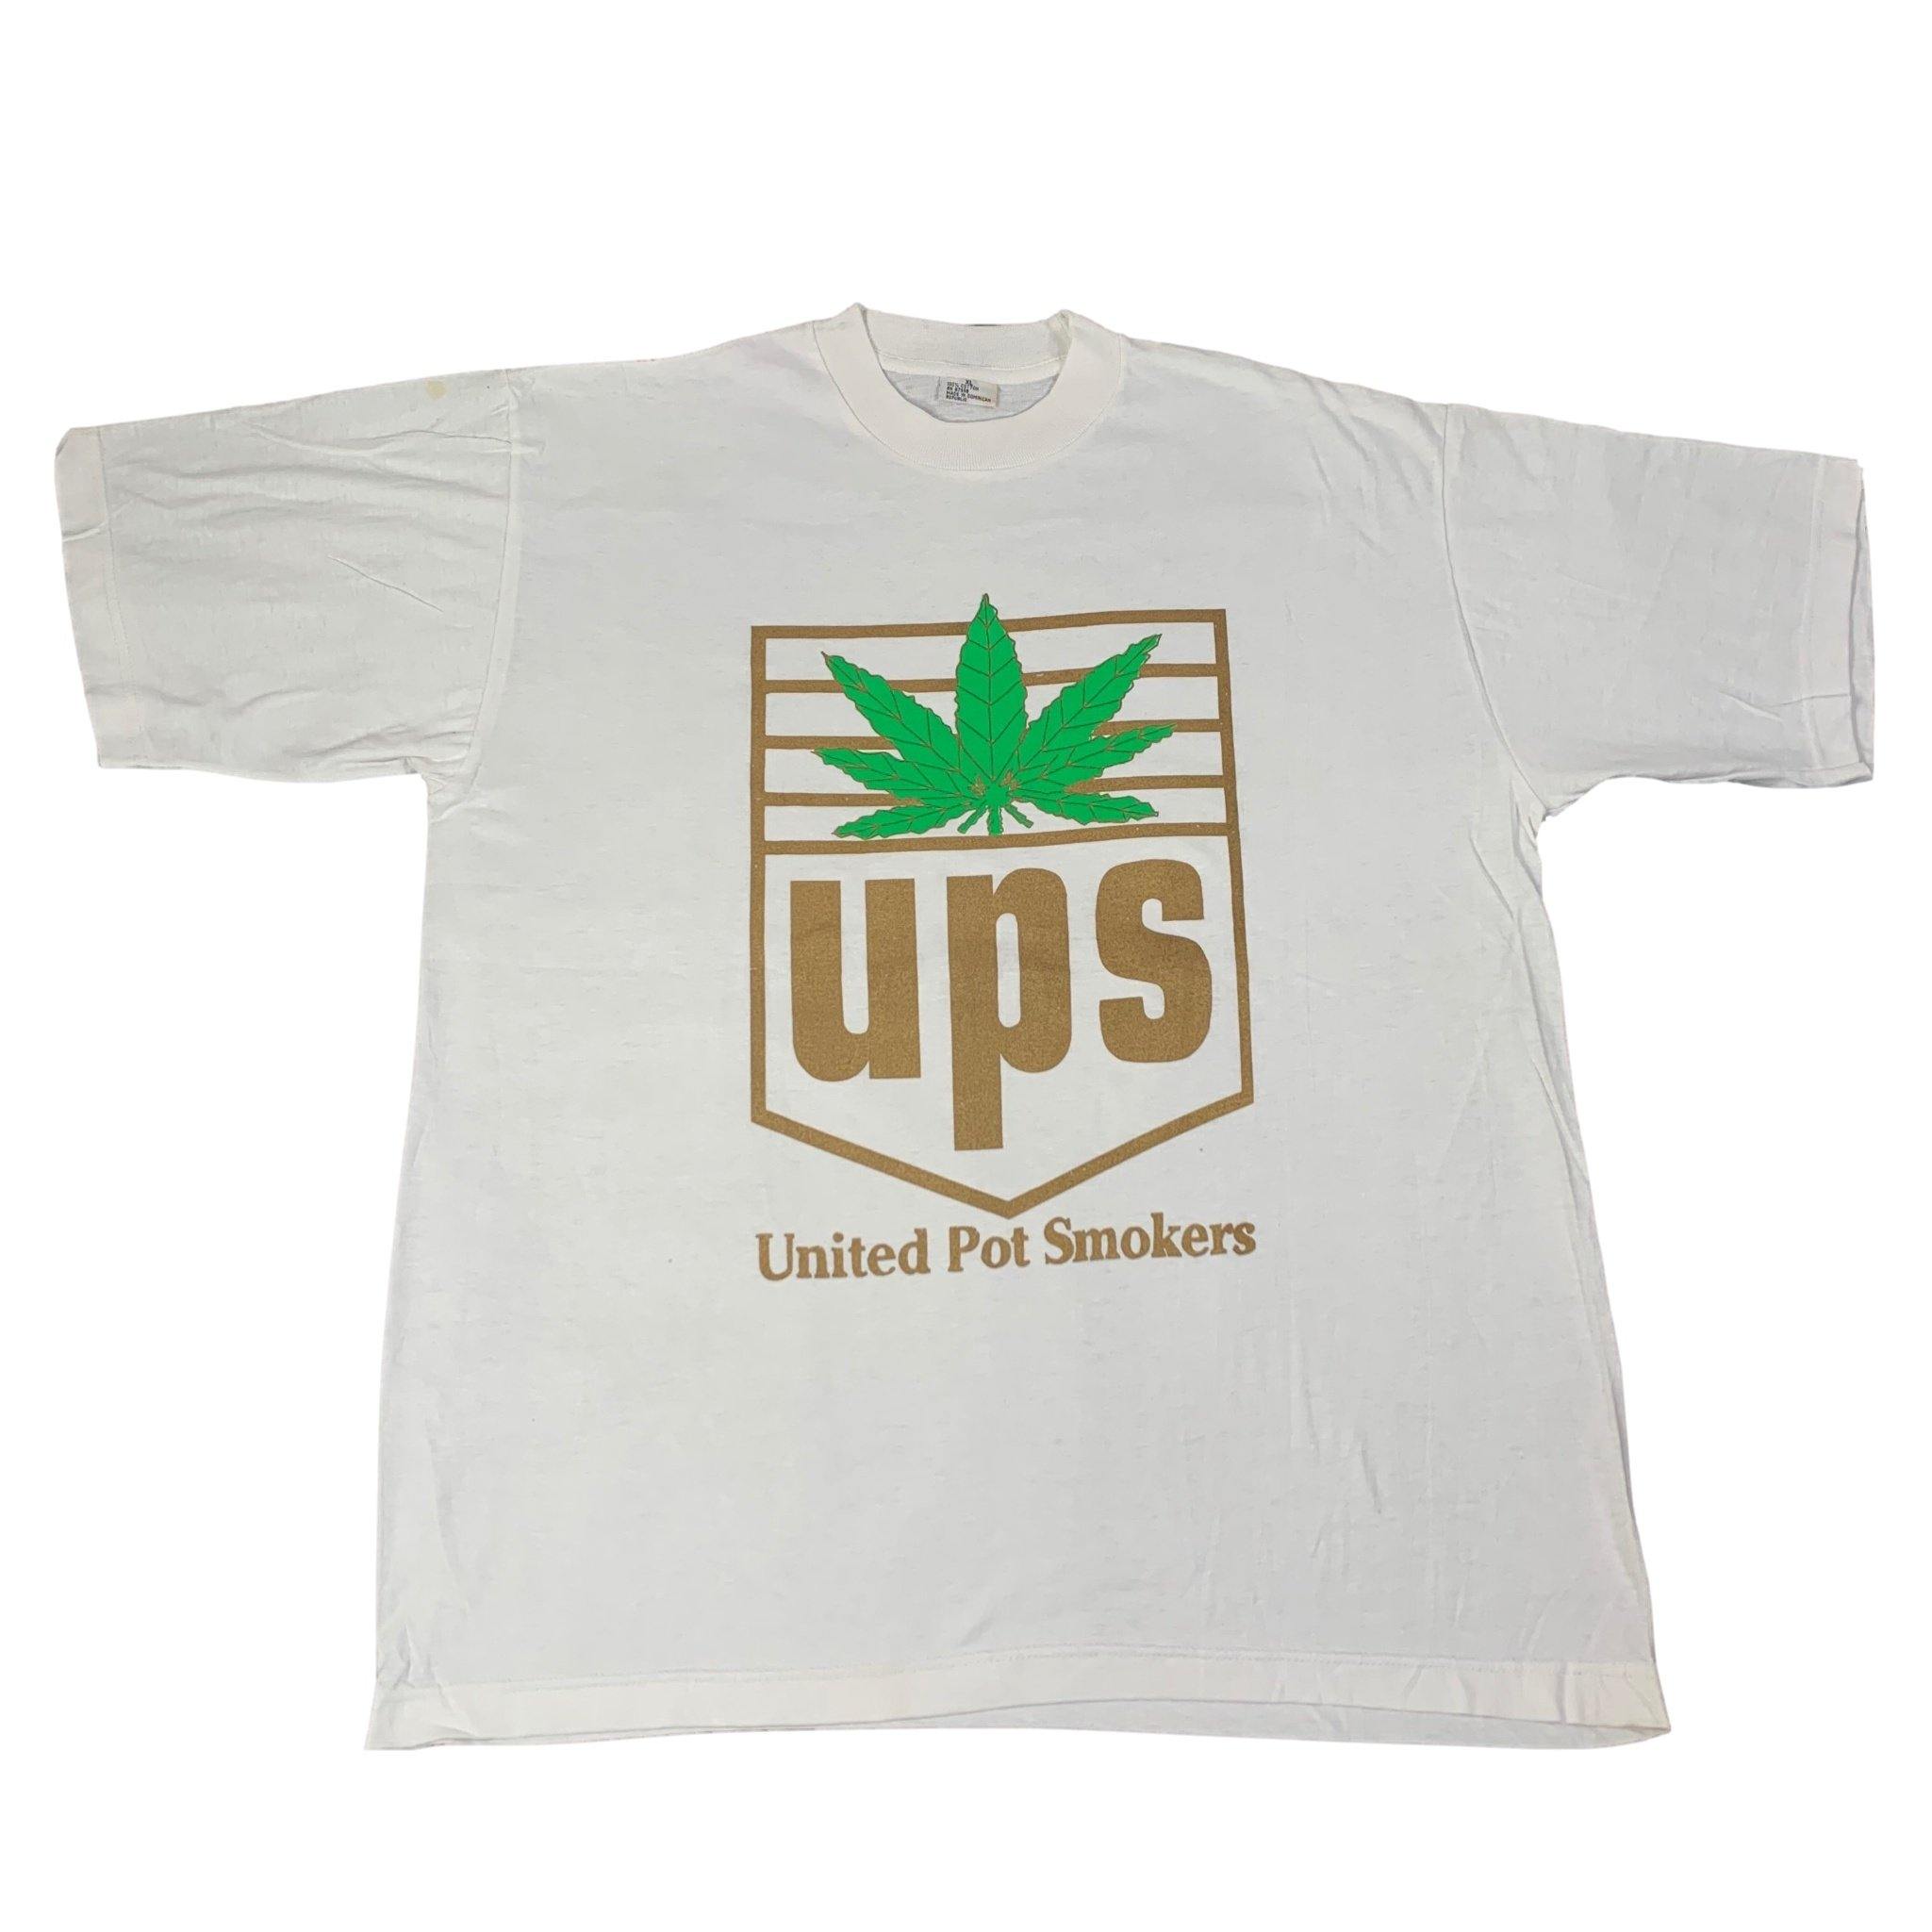 激レア90'S当時物UPS United Pot Smokers Tシャツ L - ファッション